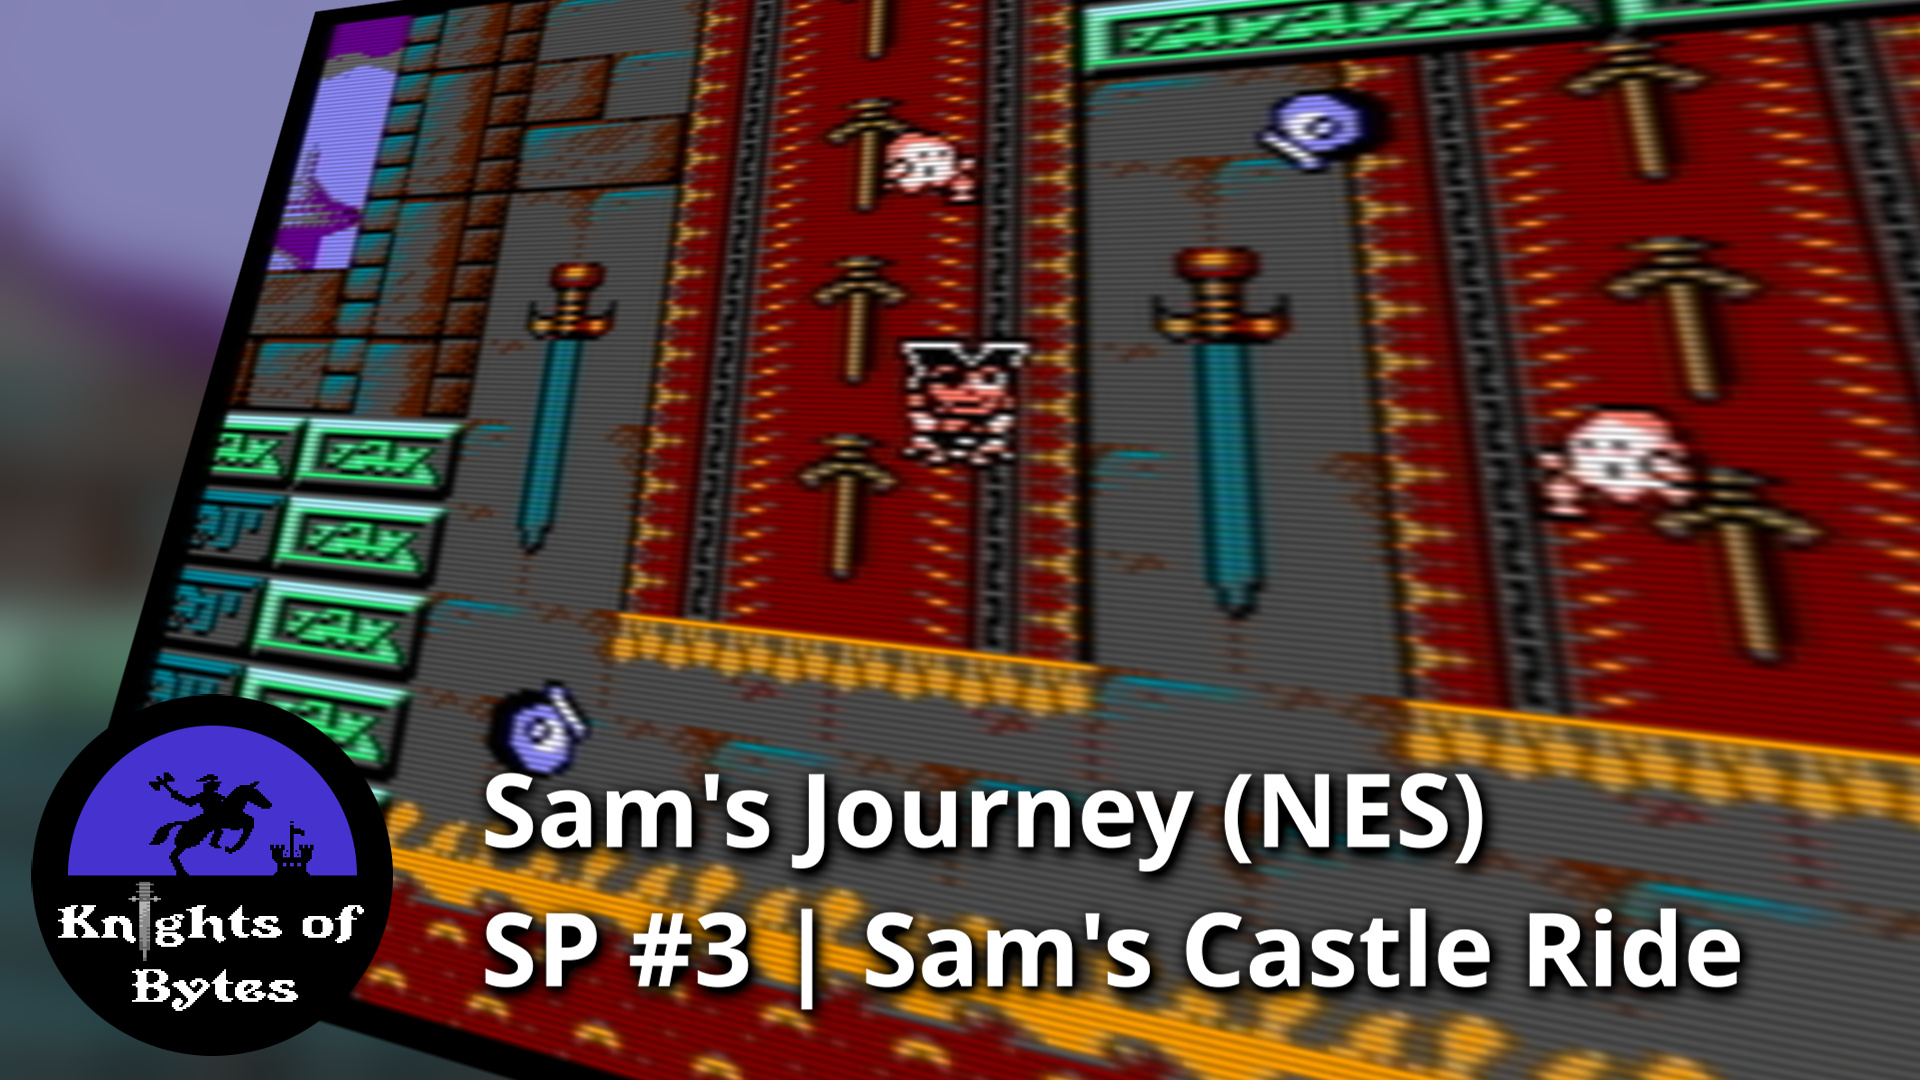 Sam's Journey NES Sneak Peek 3 Poster